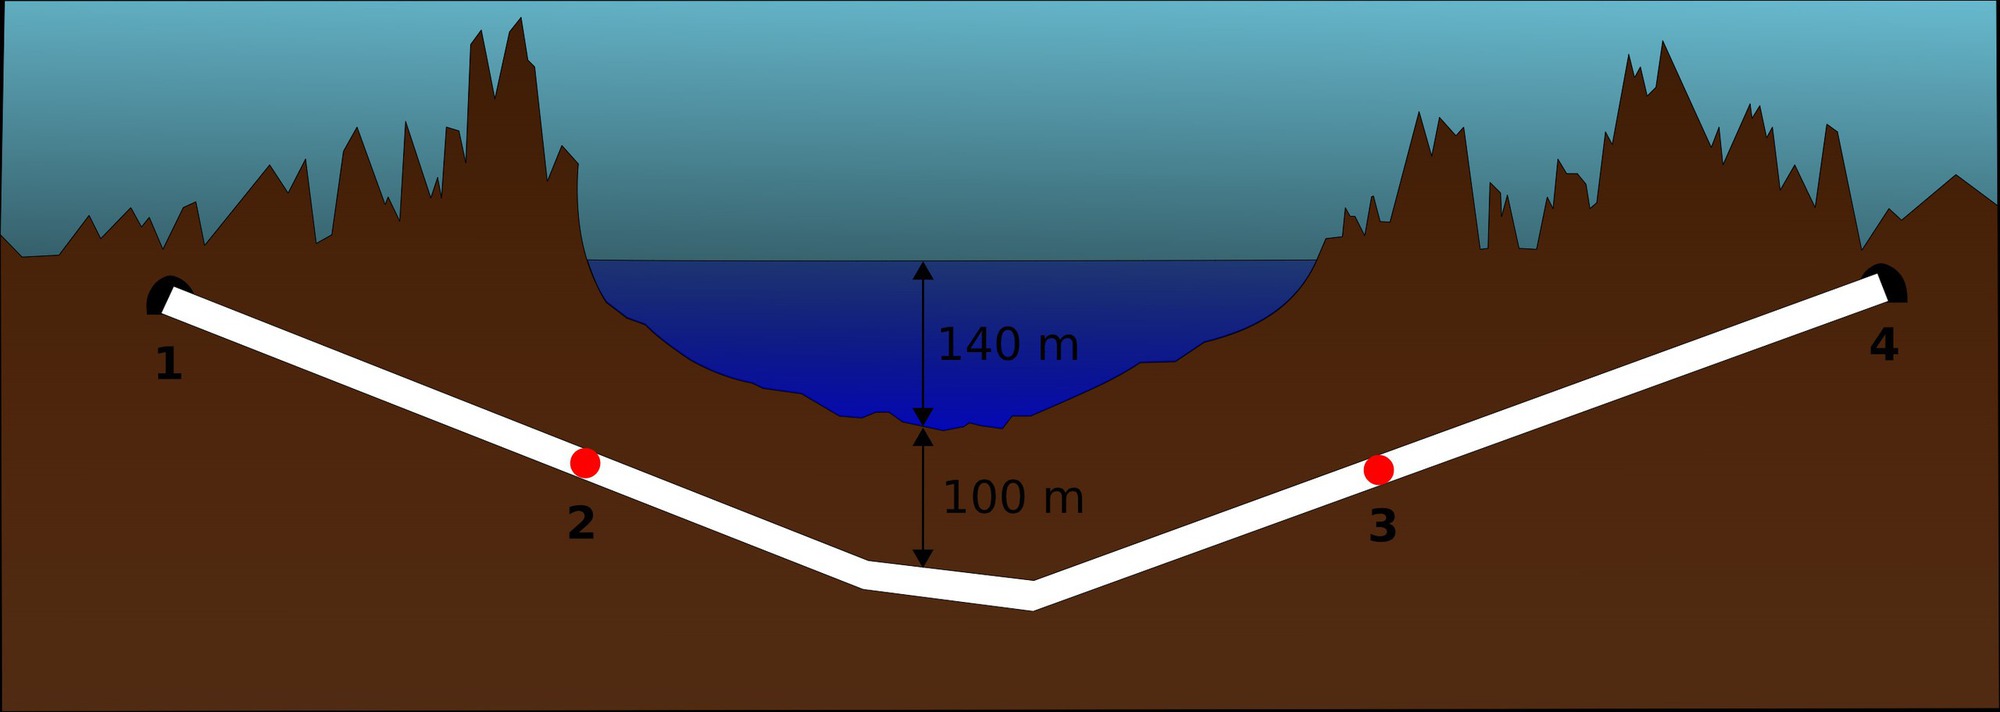 Đường hầm dưới nước được xây dựng như thế nào?- Ảnh 1.